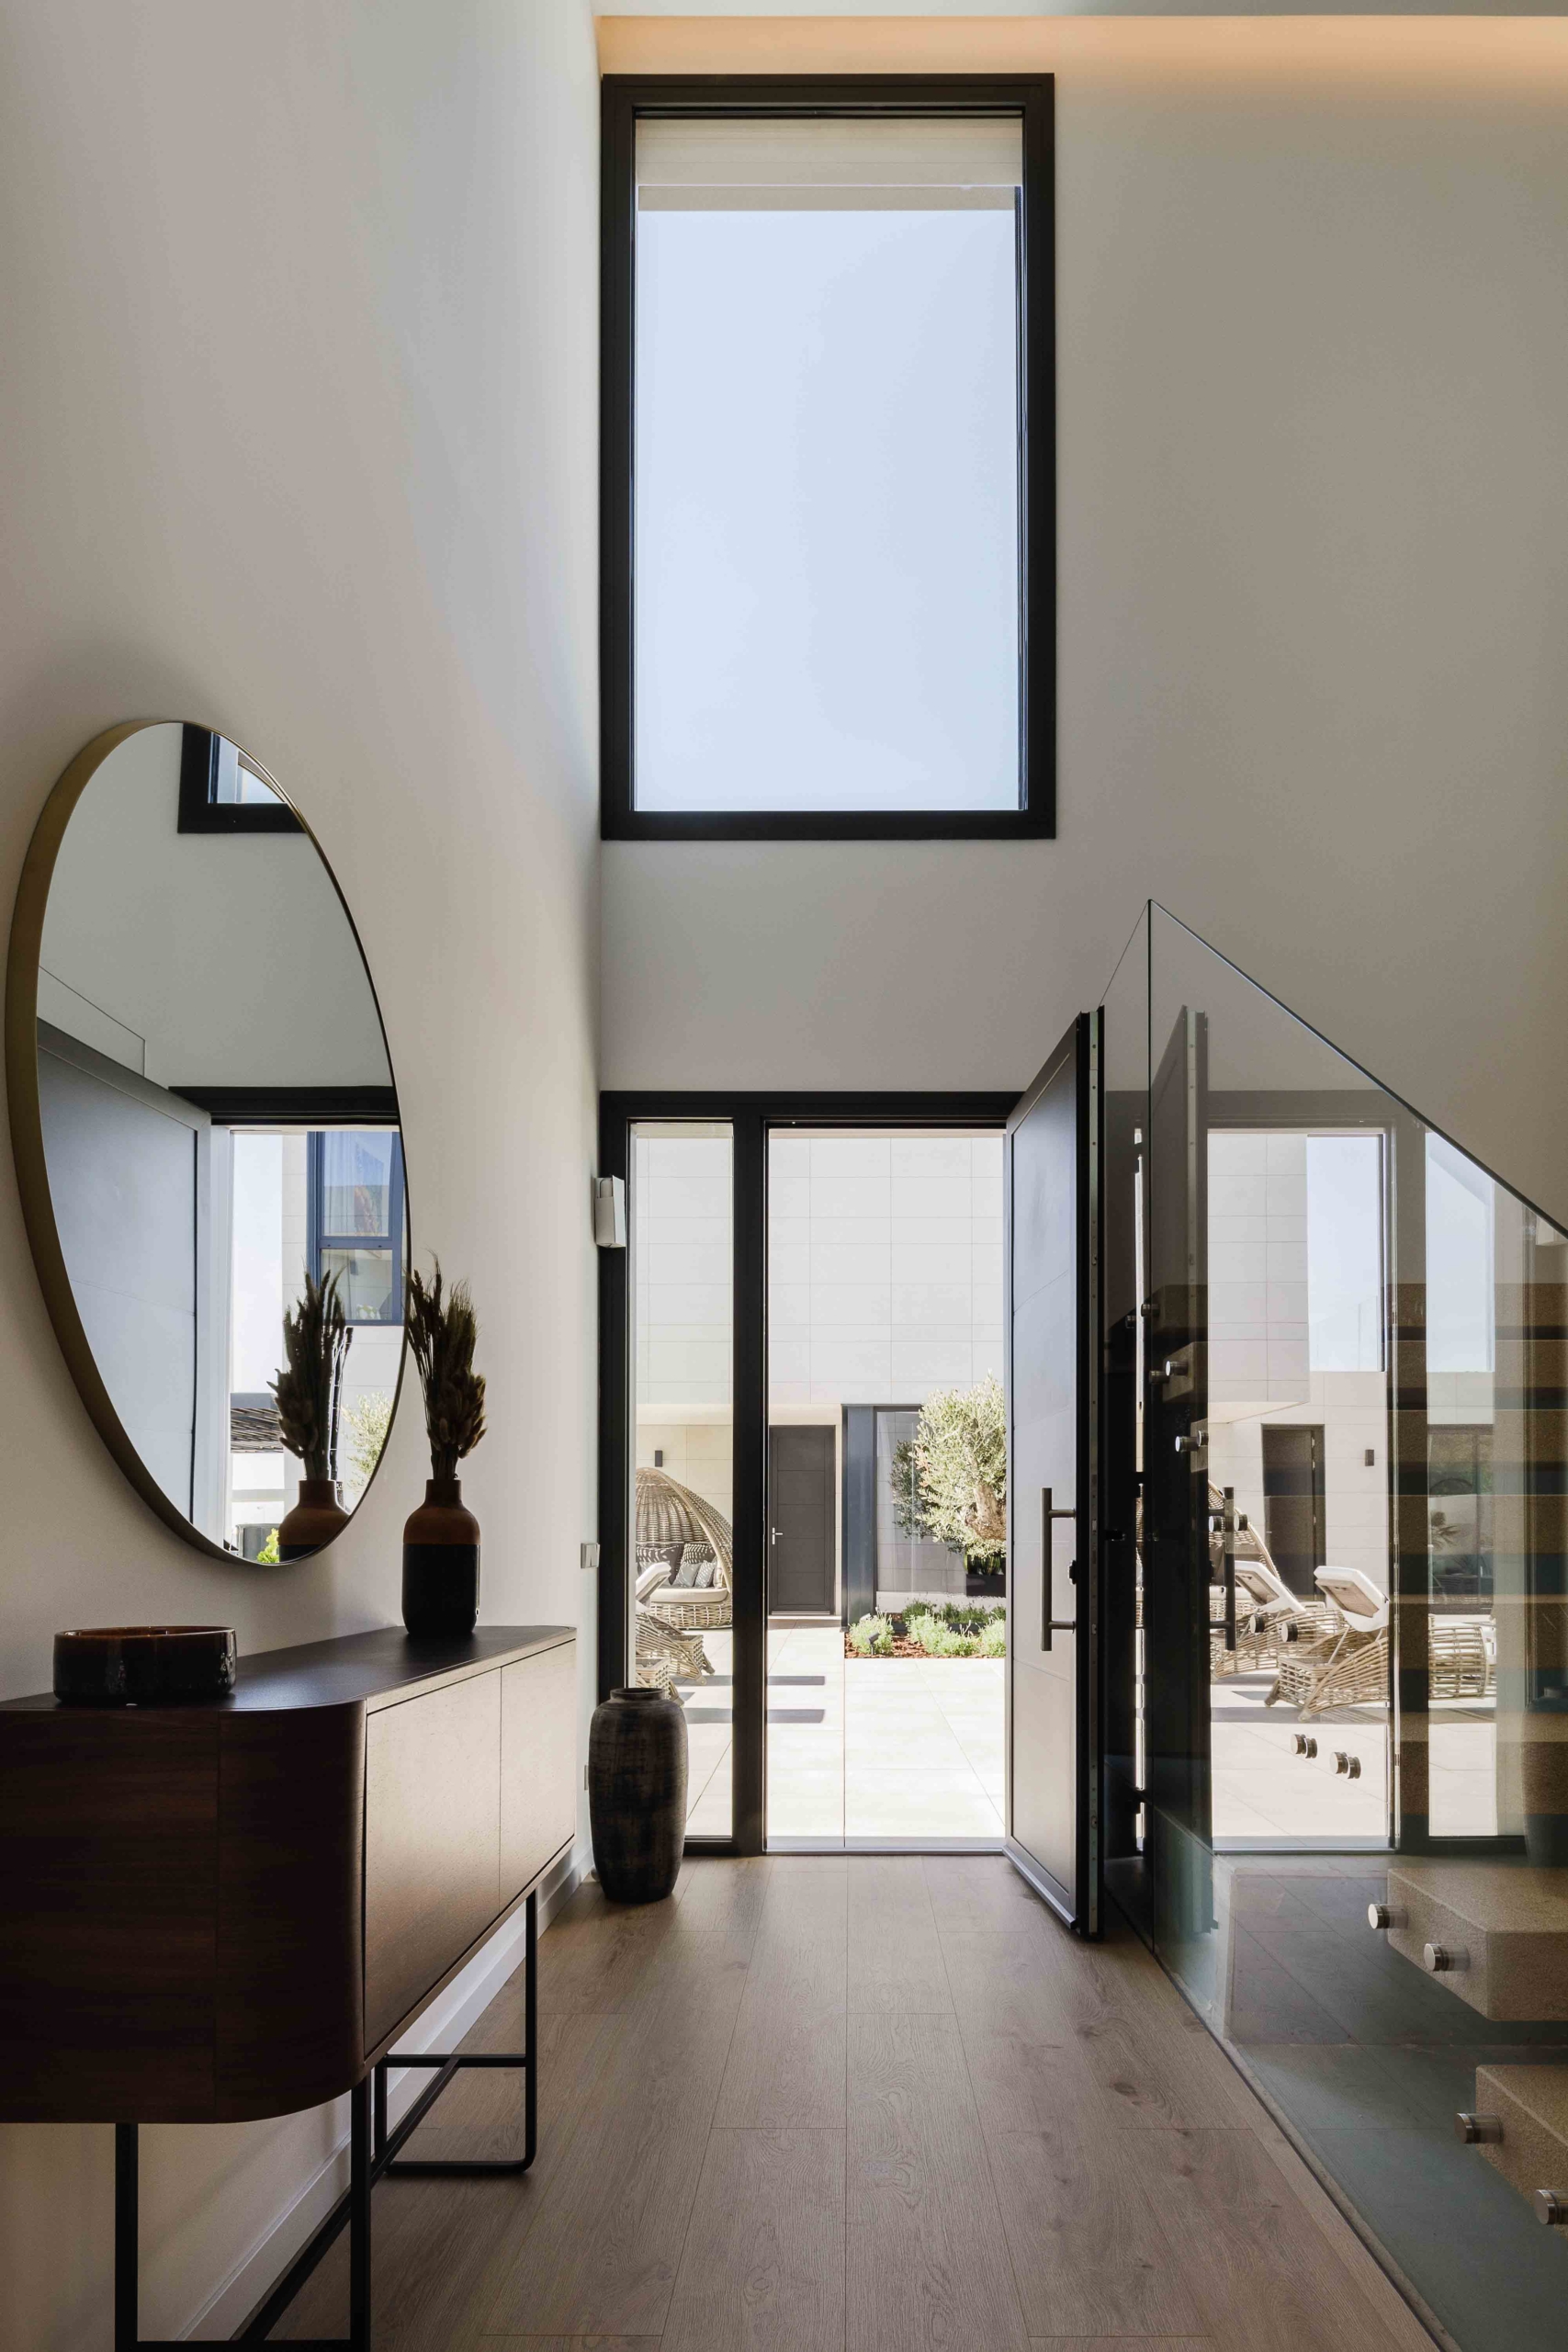 Interiorismo entrada y acceso a casa de lujo modular